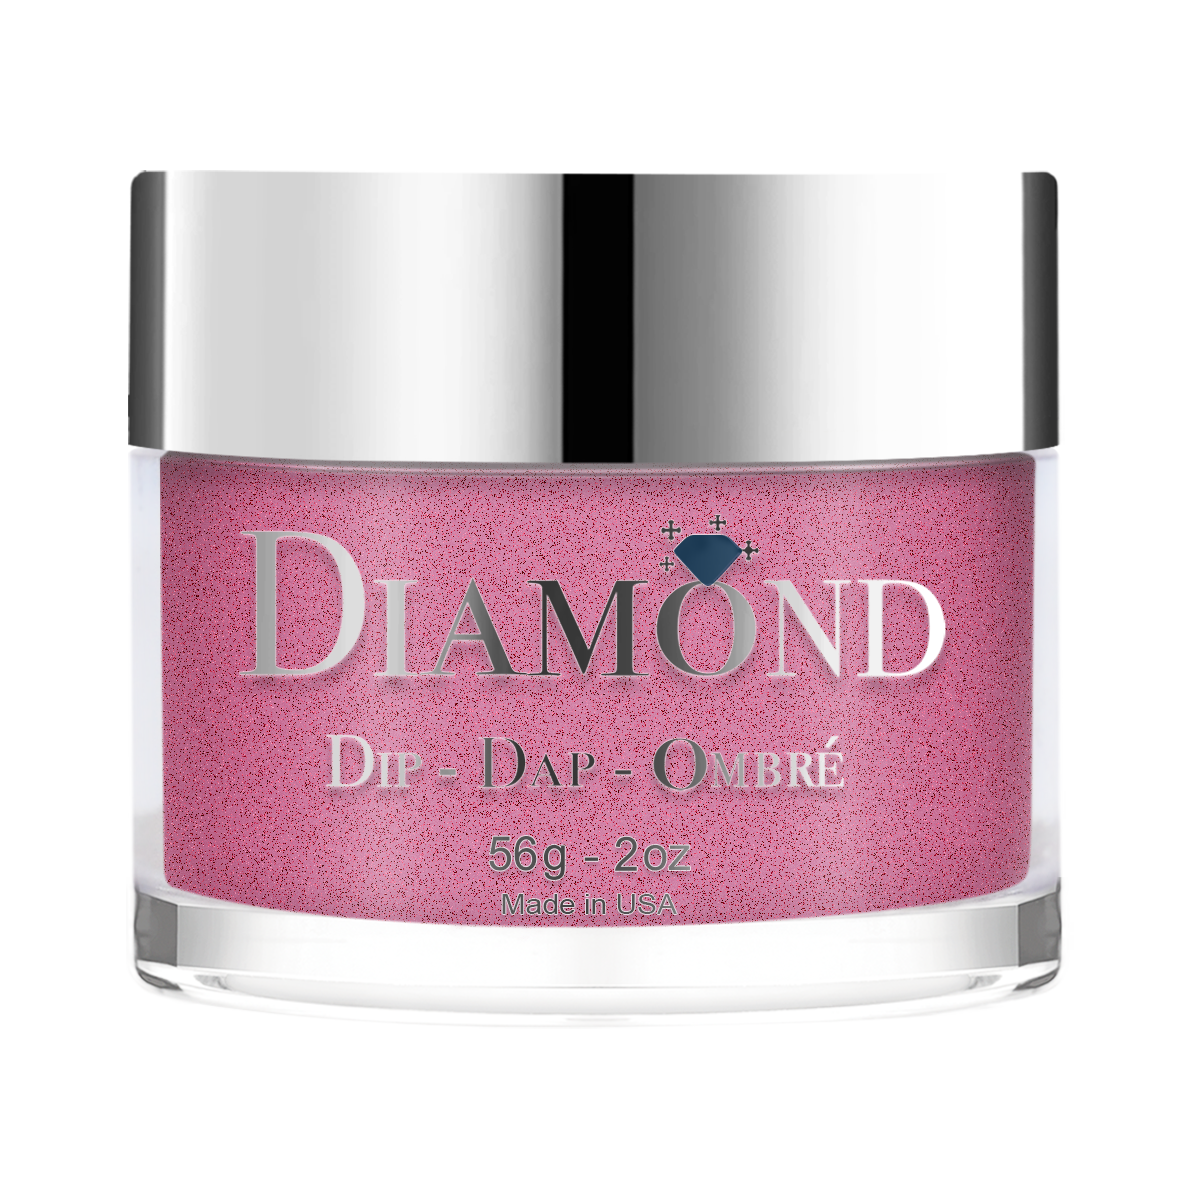 Diamond Dip & Dap Ombre Powder - 138